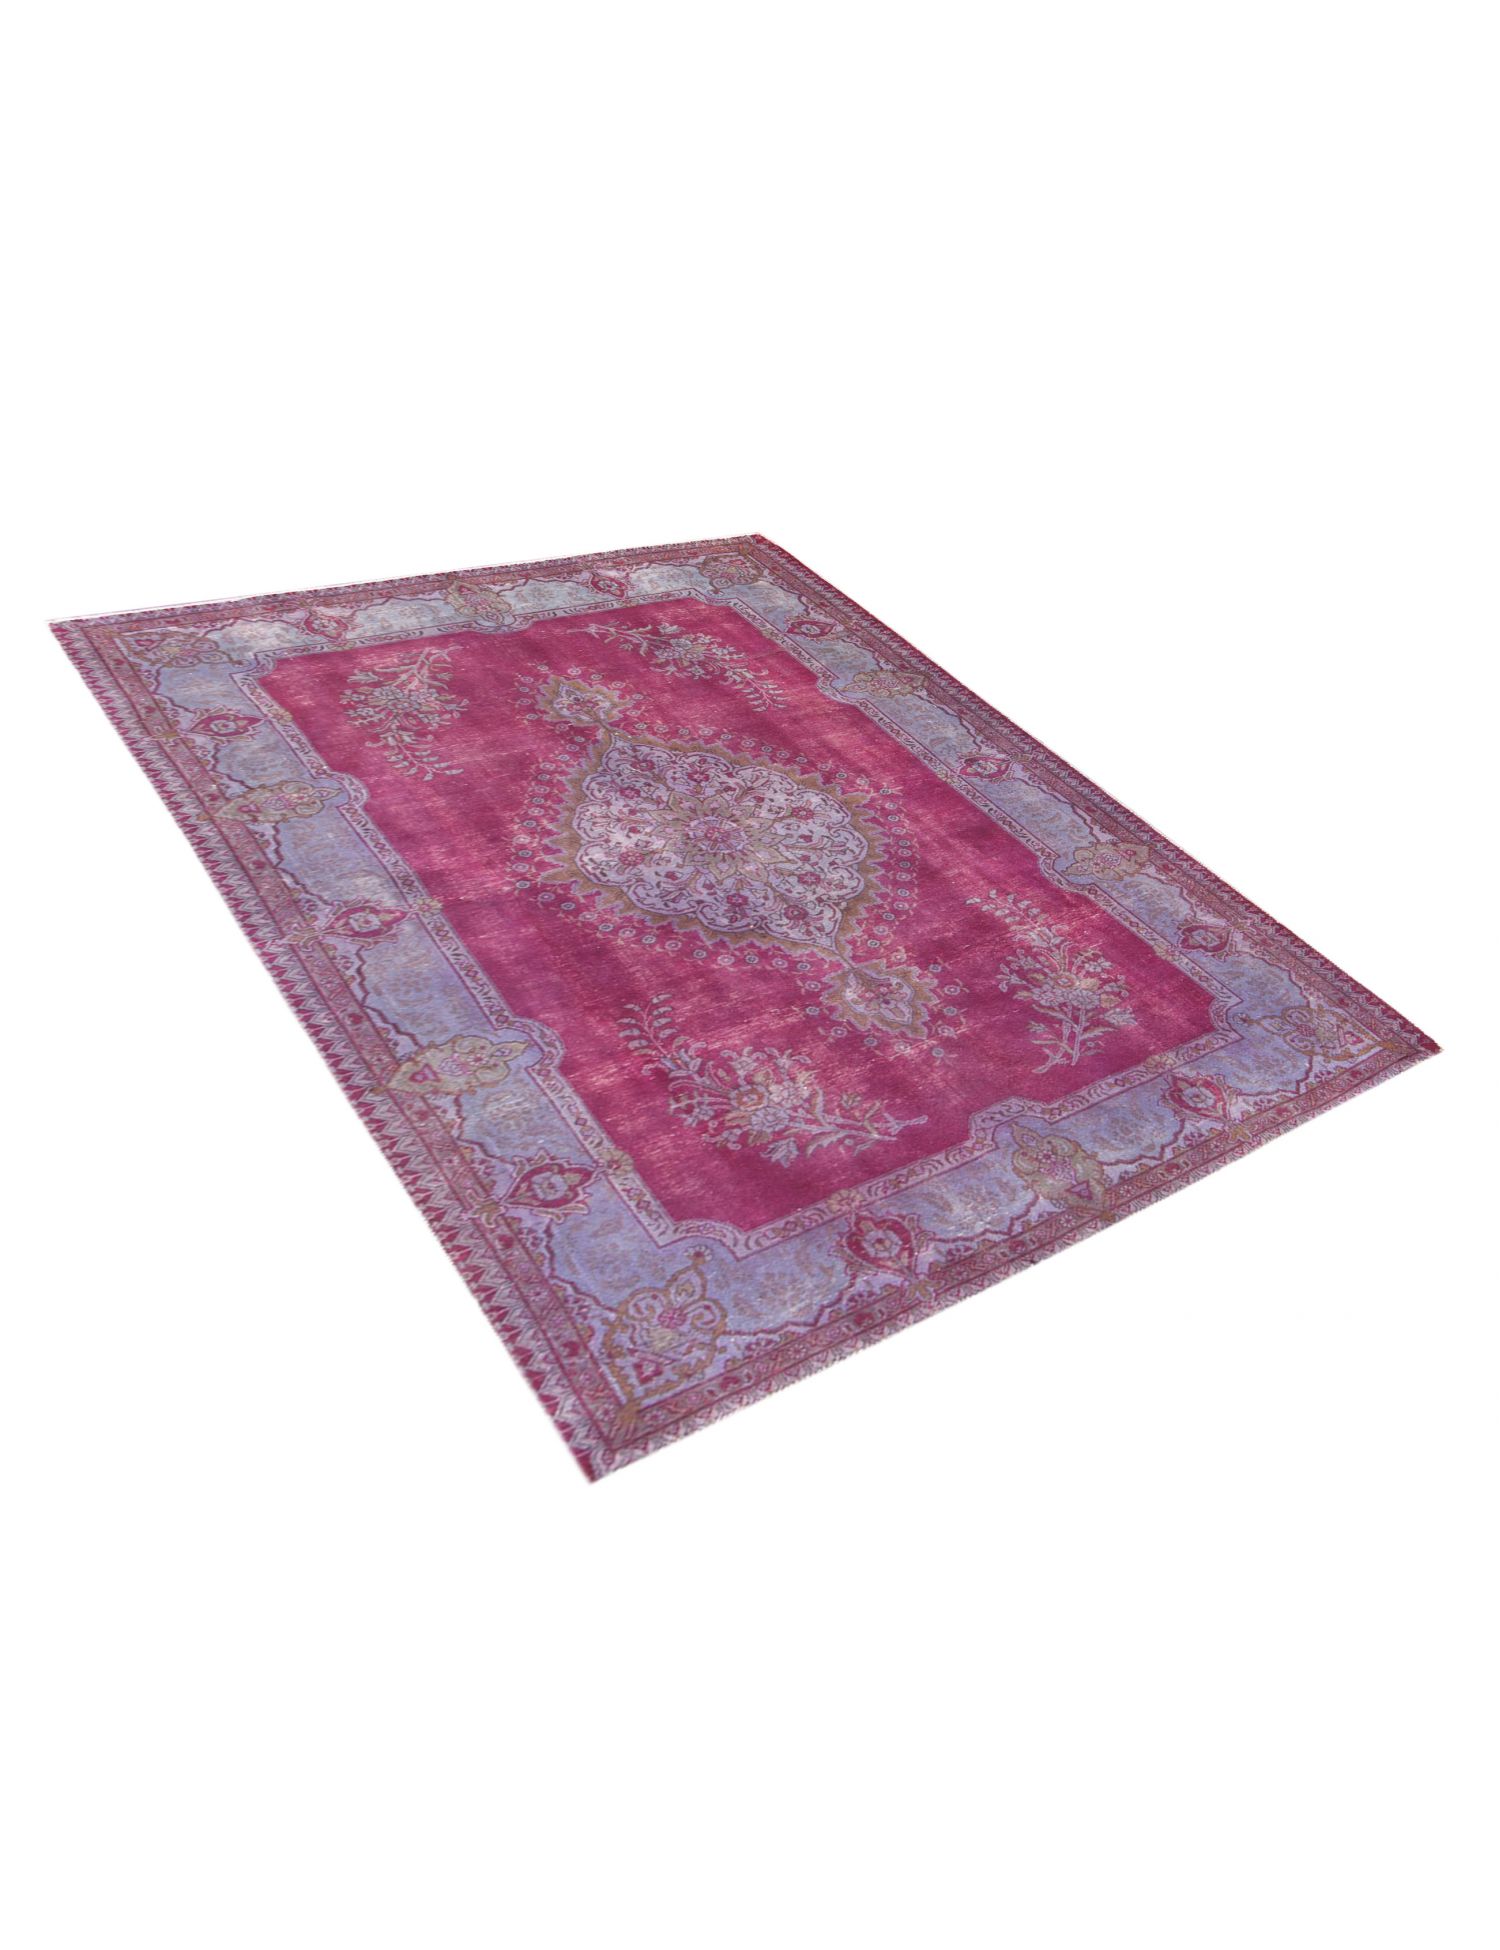 Persischer Vintage Teppich  türkis <br/>285 x 200 cm